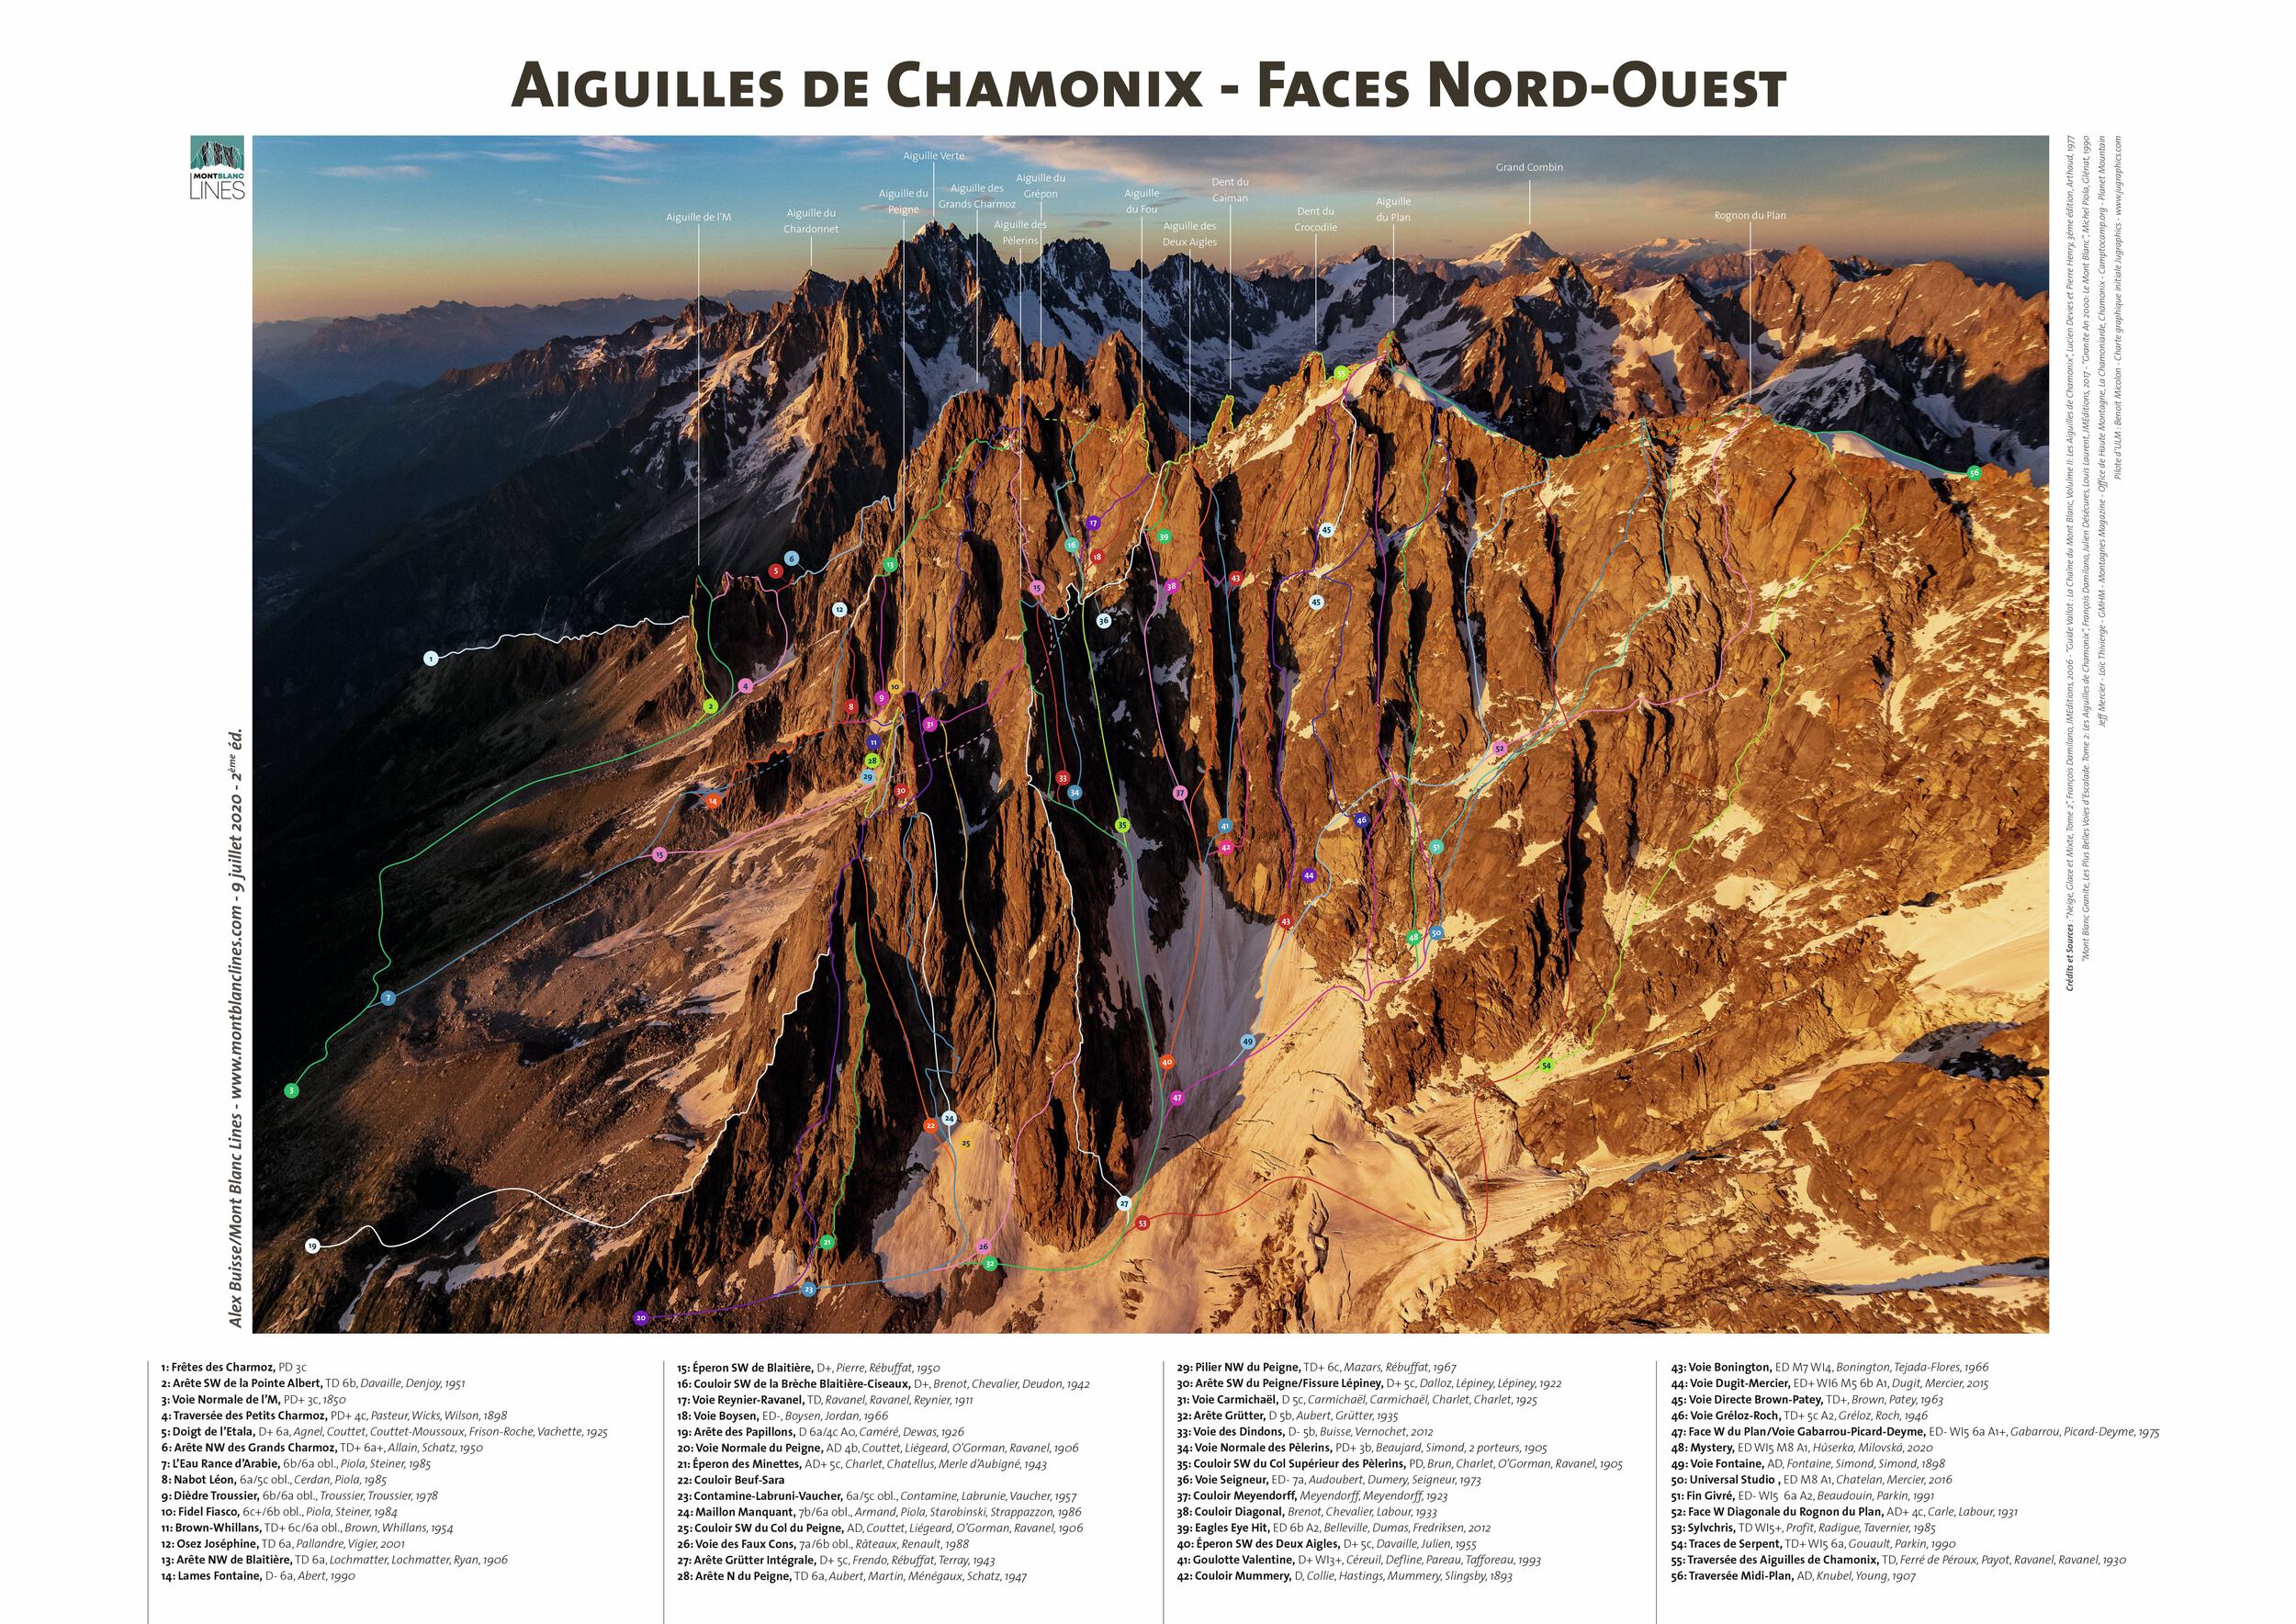 Aiguilles de Chamonix - Northwest Faces